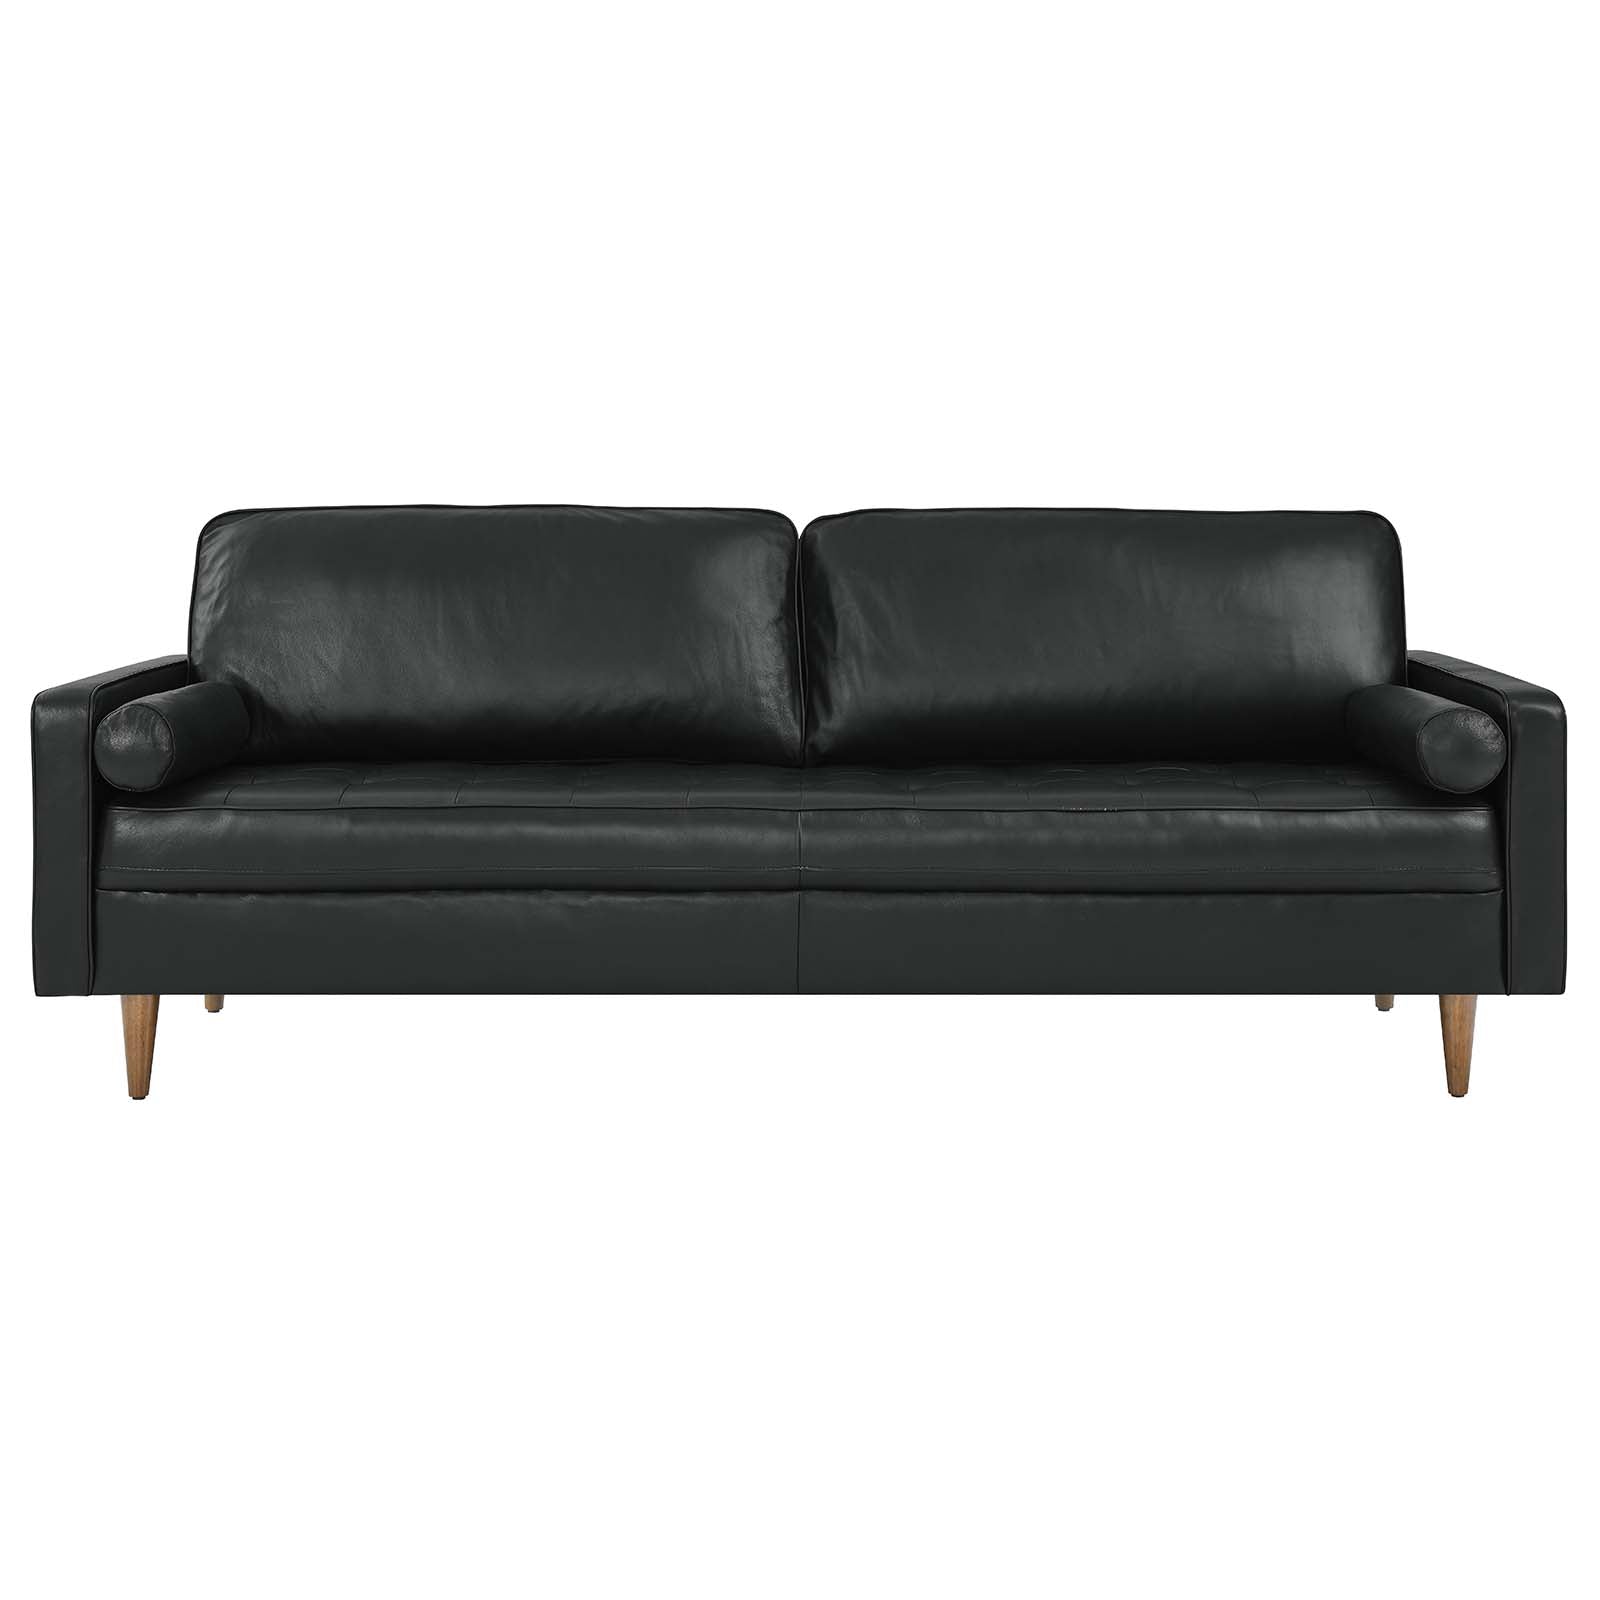 Modway Sofas & Couches - Valour 88" Leather Sofa Black